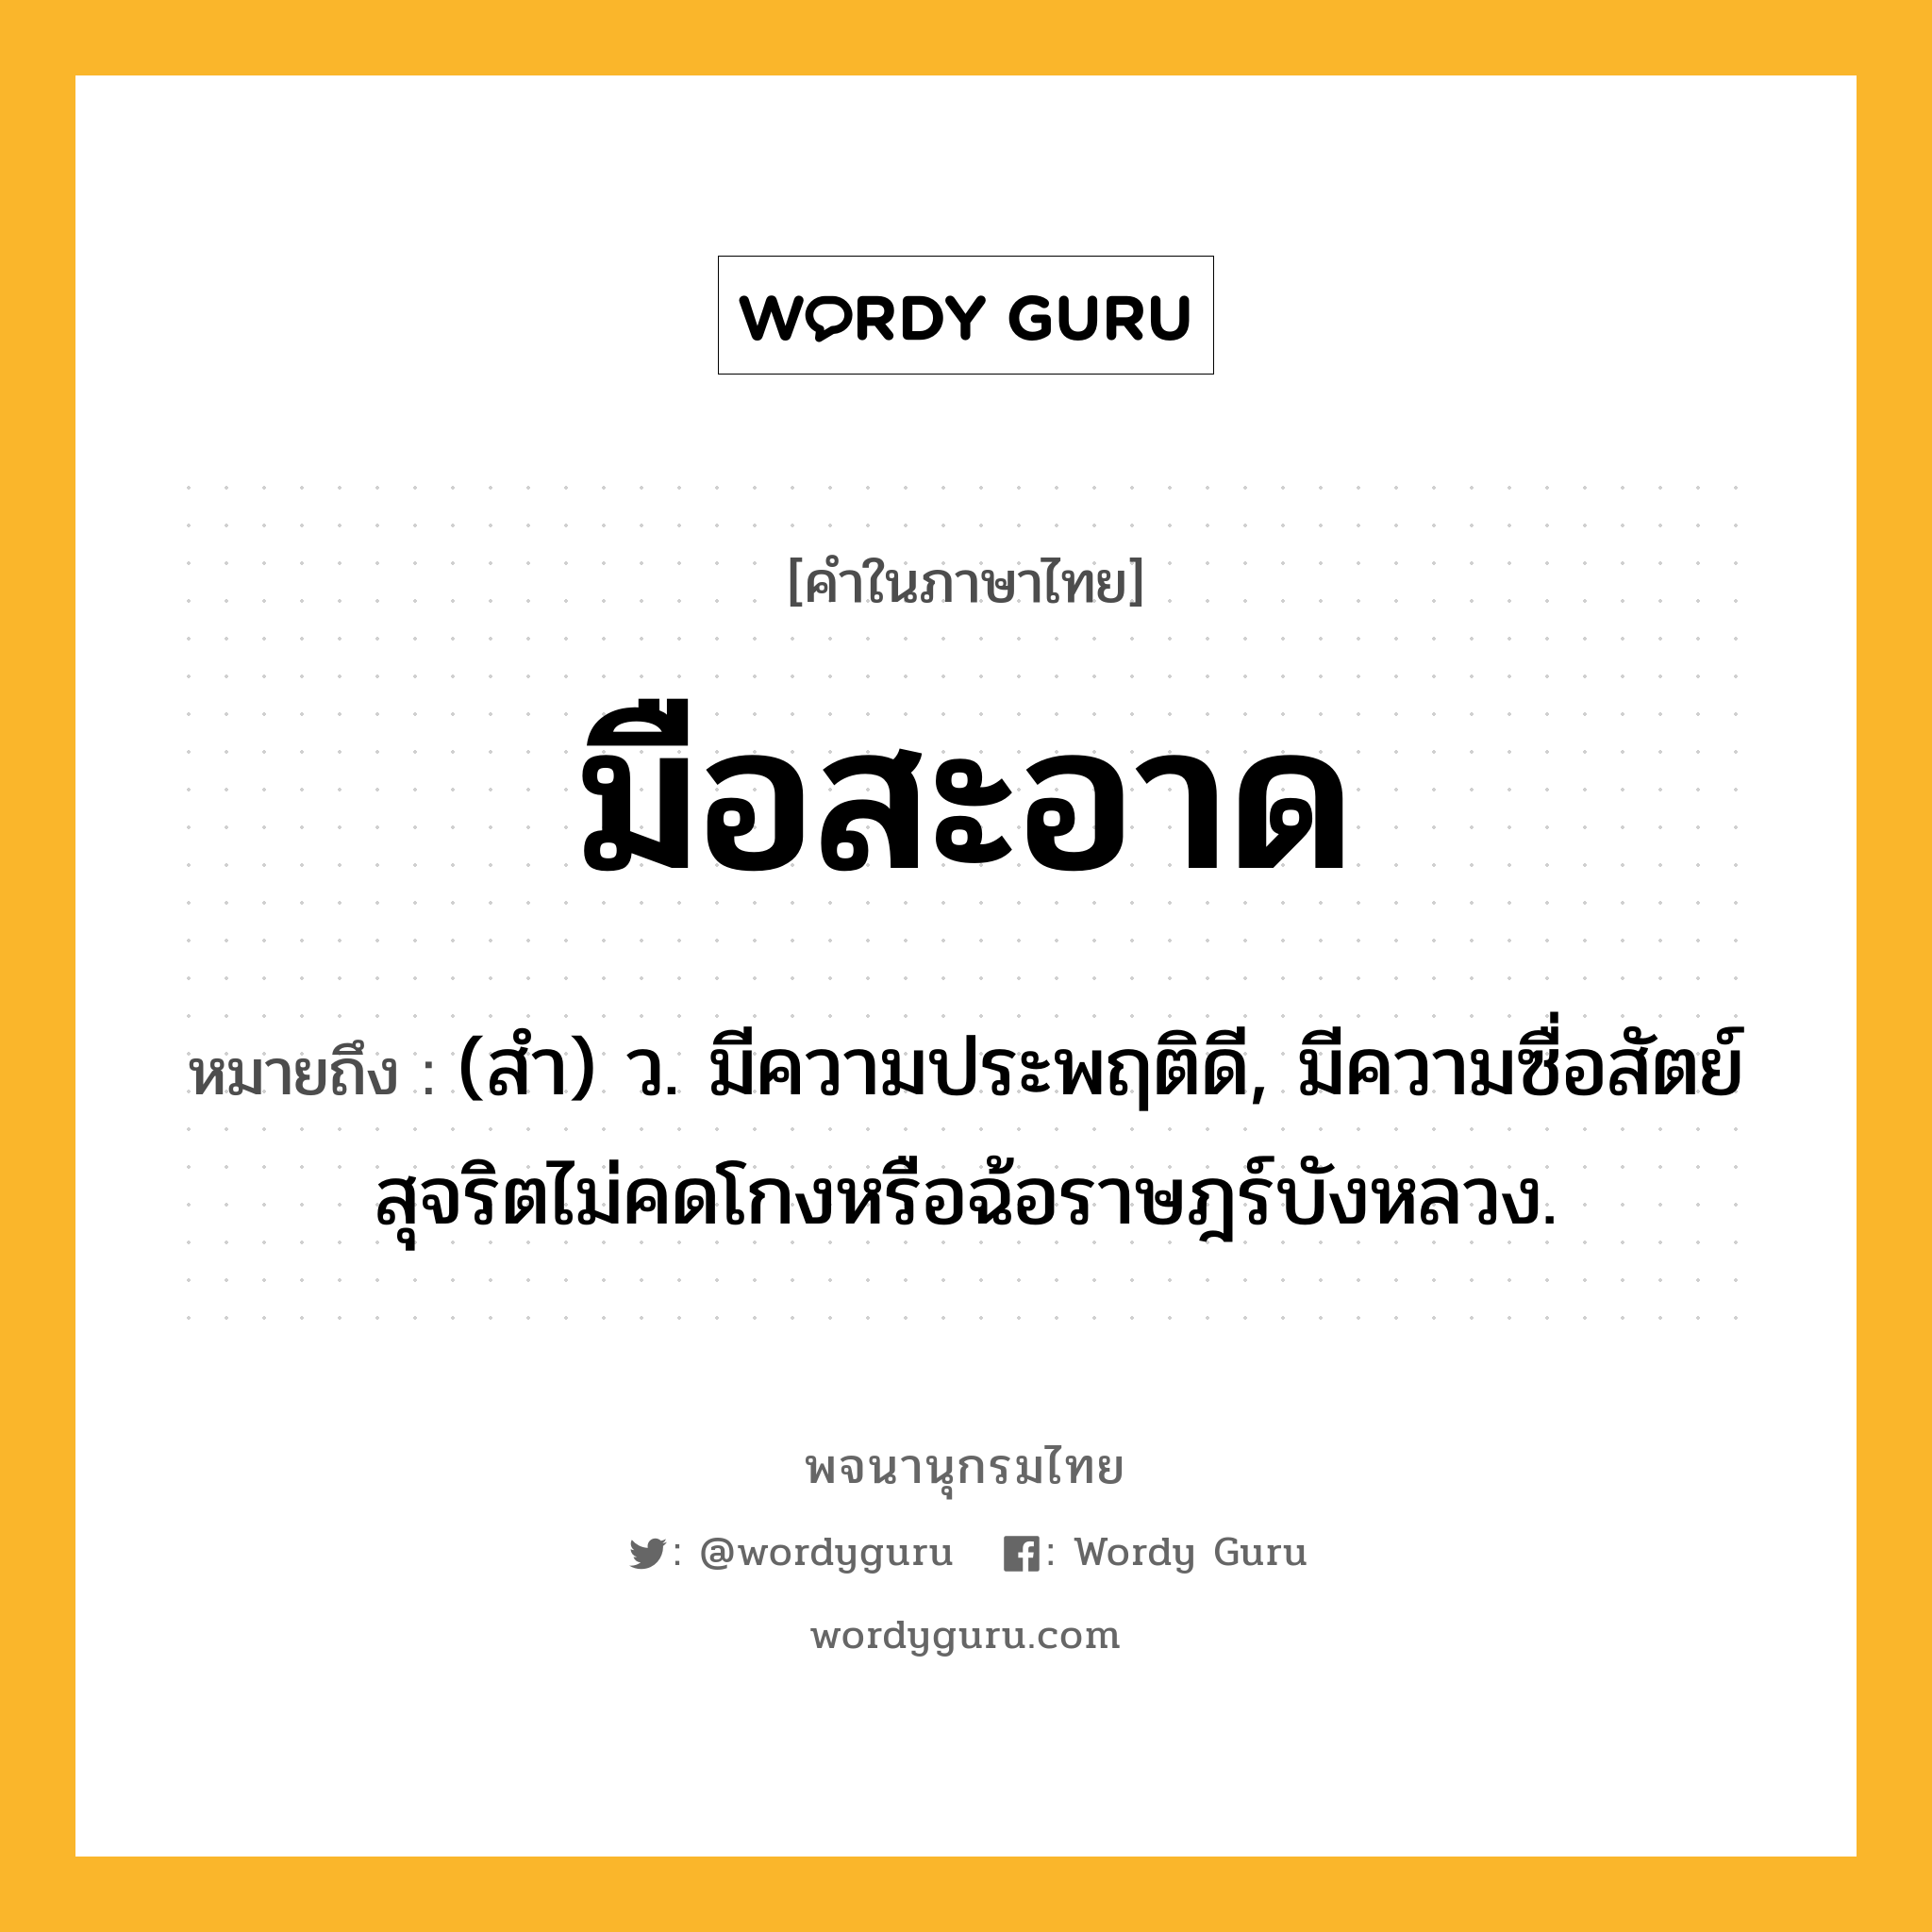 มือสะอาด ความหมาย หมายถึงอะไร?, คำในภาษาไทย มือสะอาด หมายถึง (สํา) ว. มีความประพฤติดี, มีความซื่อสัตย์สุจริตไม่คดโกงหรือฉ้อราษฎร์บังหลวง.